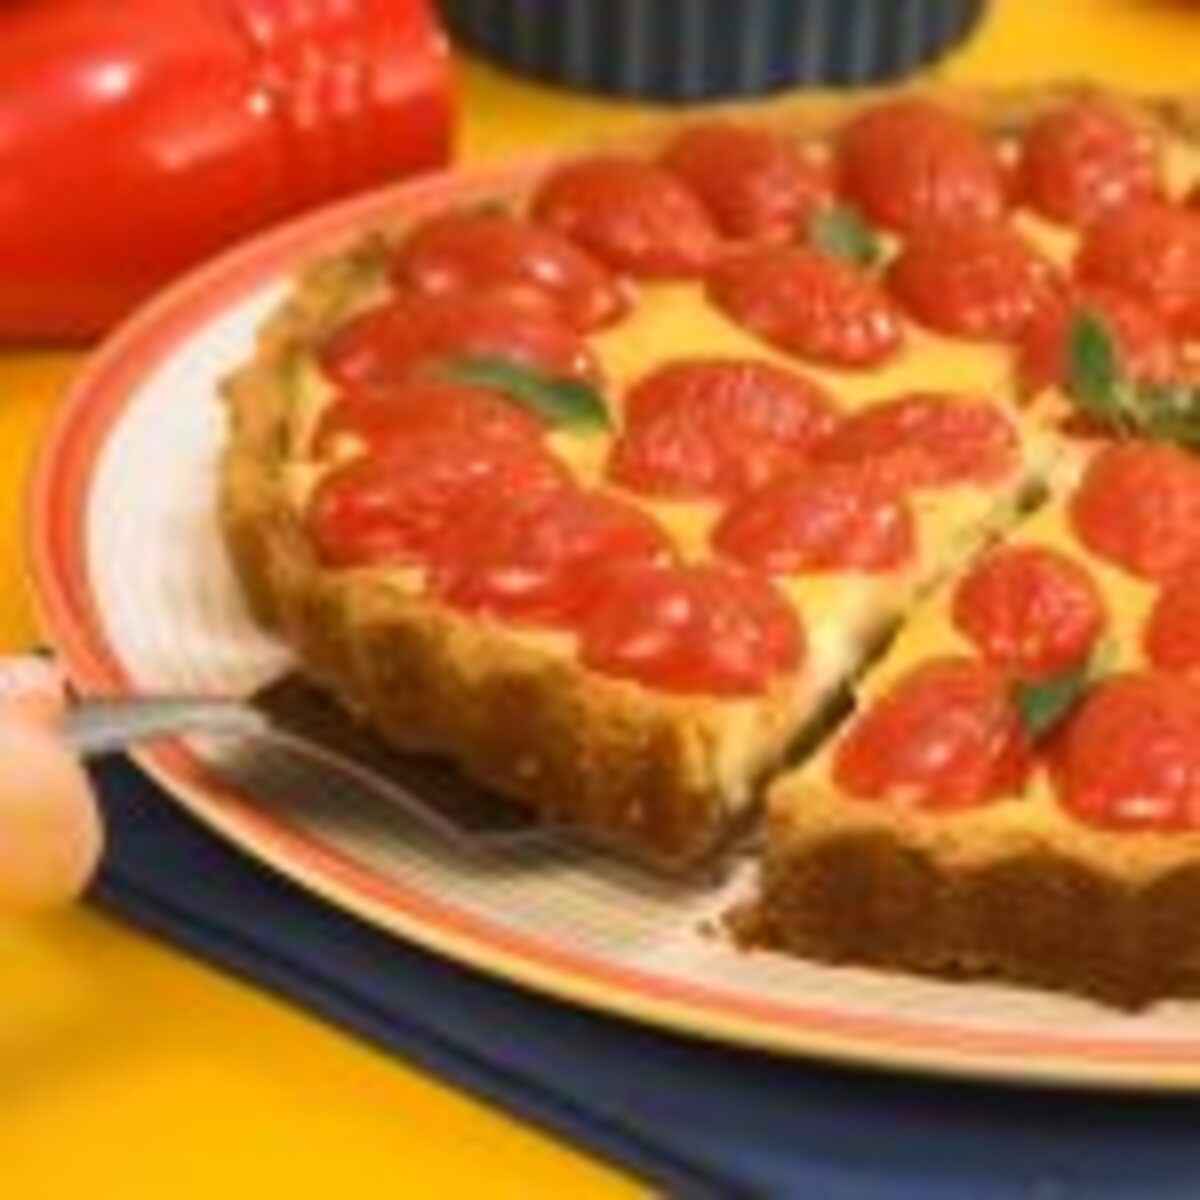 Torta-de-Queijo-com-Tomate:Jefferson de almeida